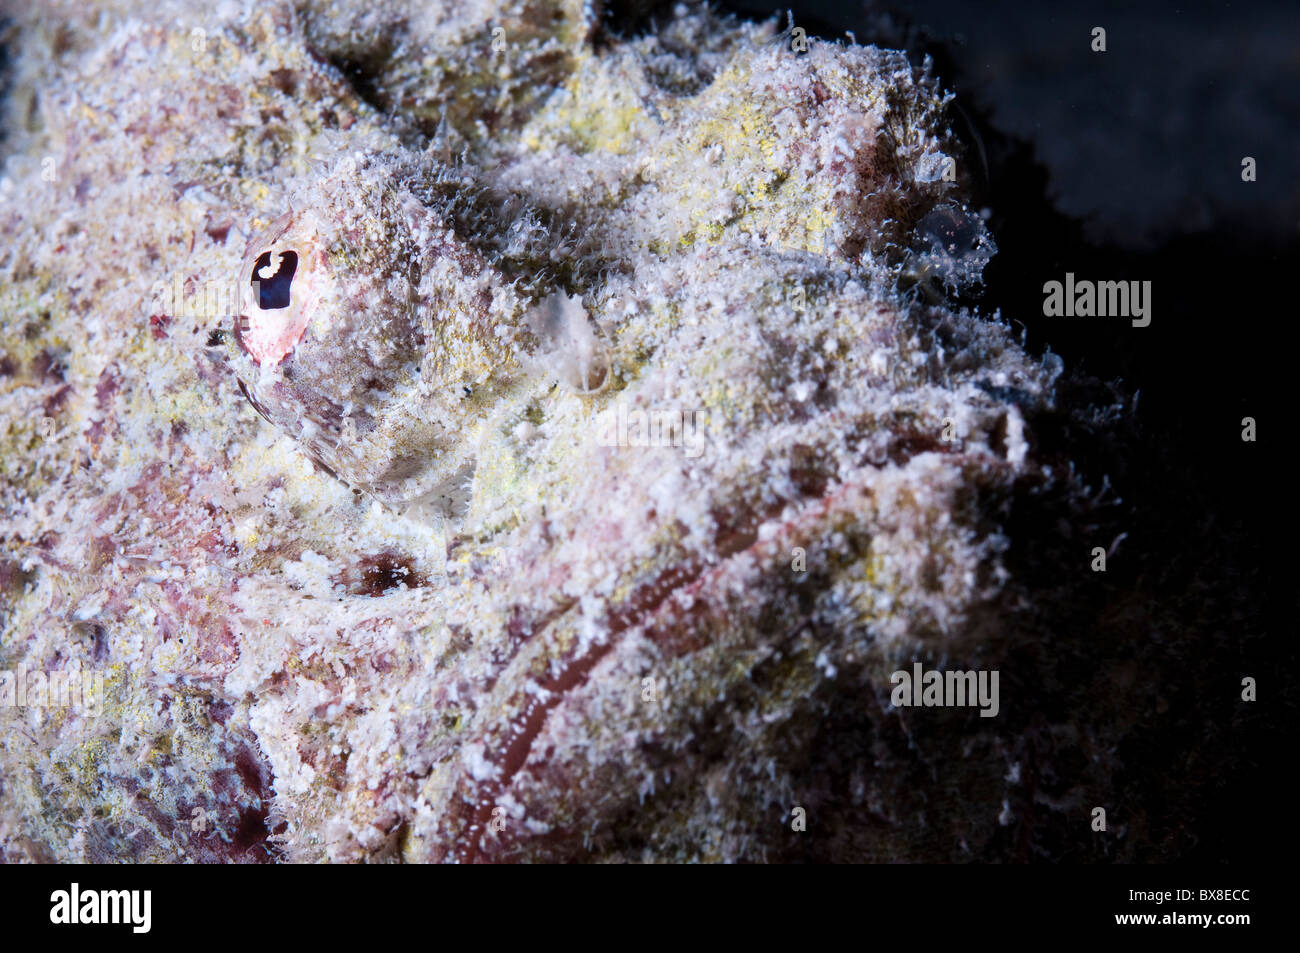 Reef pesci pietra (Synanceia verrucosa) mimetizzata tra i coralli. Foto Stock